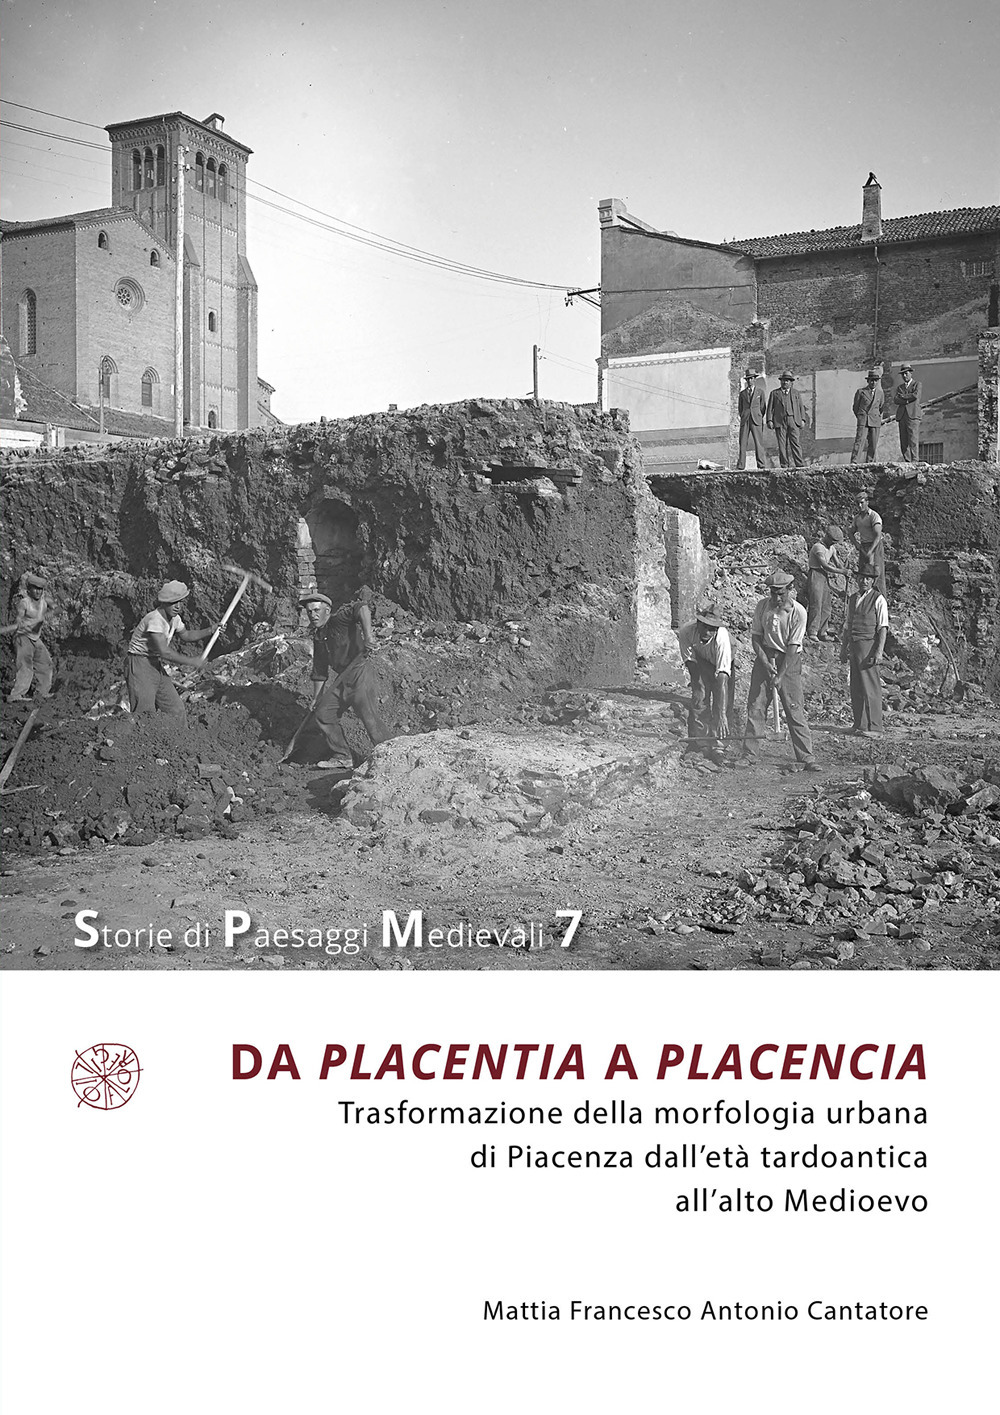 Da Placentia a Placencia. Trasformazione della morfologia urbana di Piacenza dall'età tardoantica all'alto Medioevo